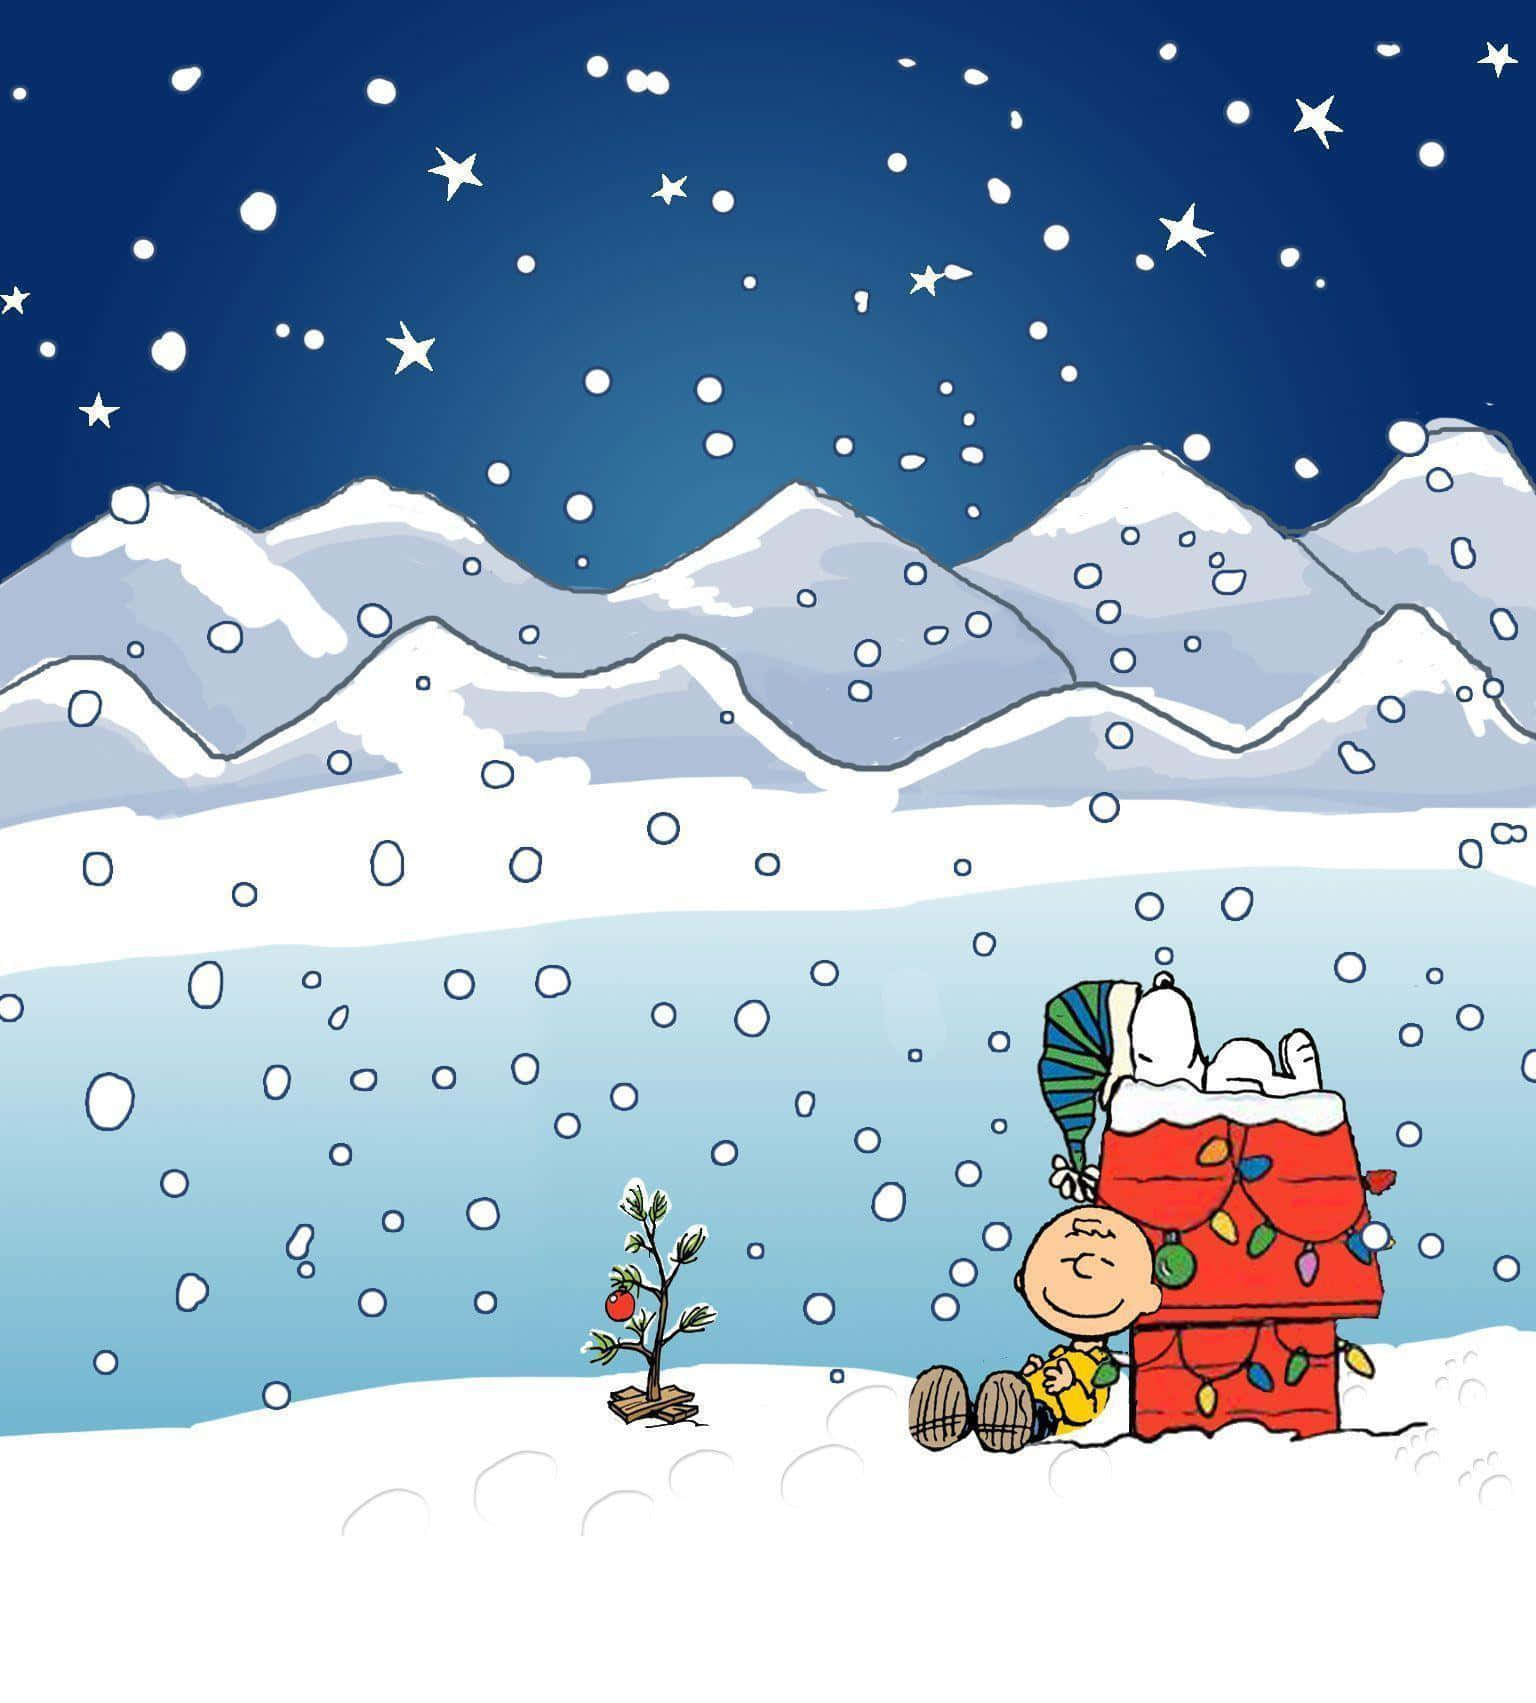 Celebreo Natal Com O Snoopy E A Turma Dos Peanuts. Papel de Parede